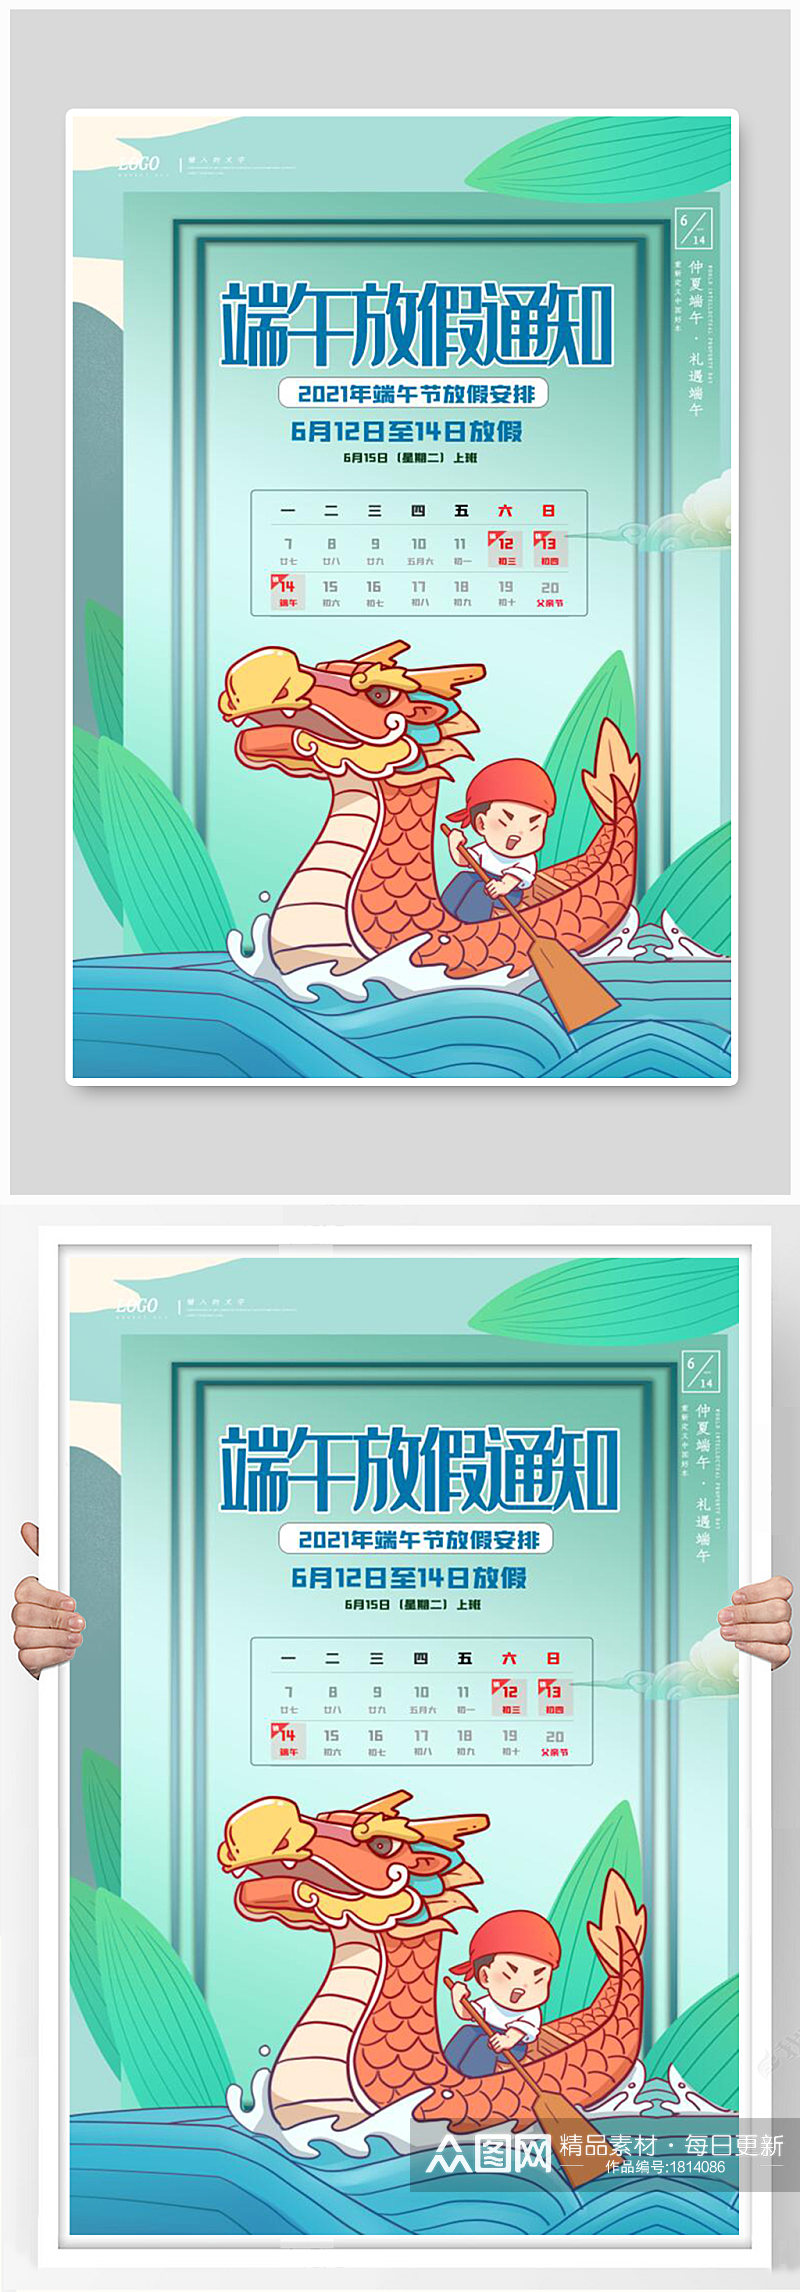 清新中国风端午佳节端午放假通知海报素材